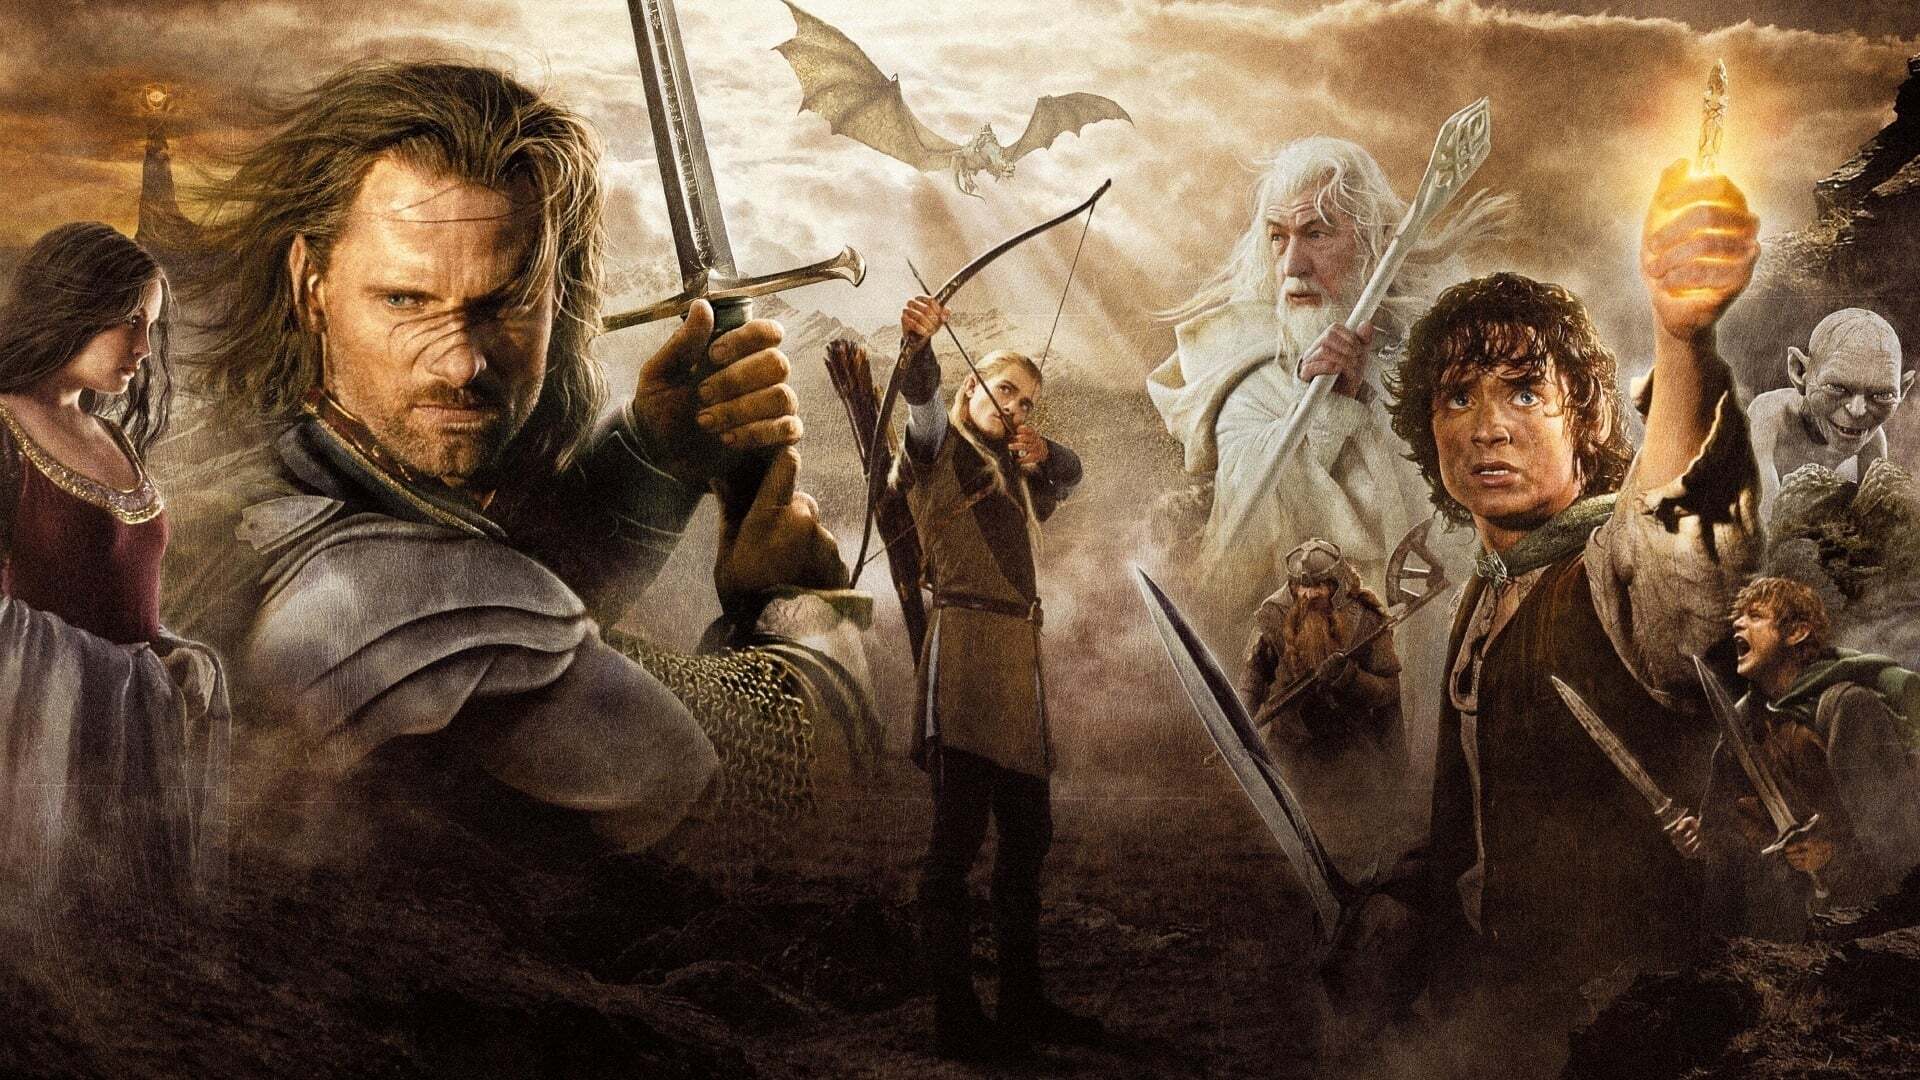 ბეჭდების მბრძანებელი: ხელმწიფის დაბრუნება / The Lord of the Rings: The Return of the King